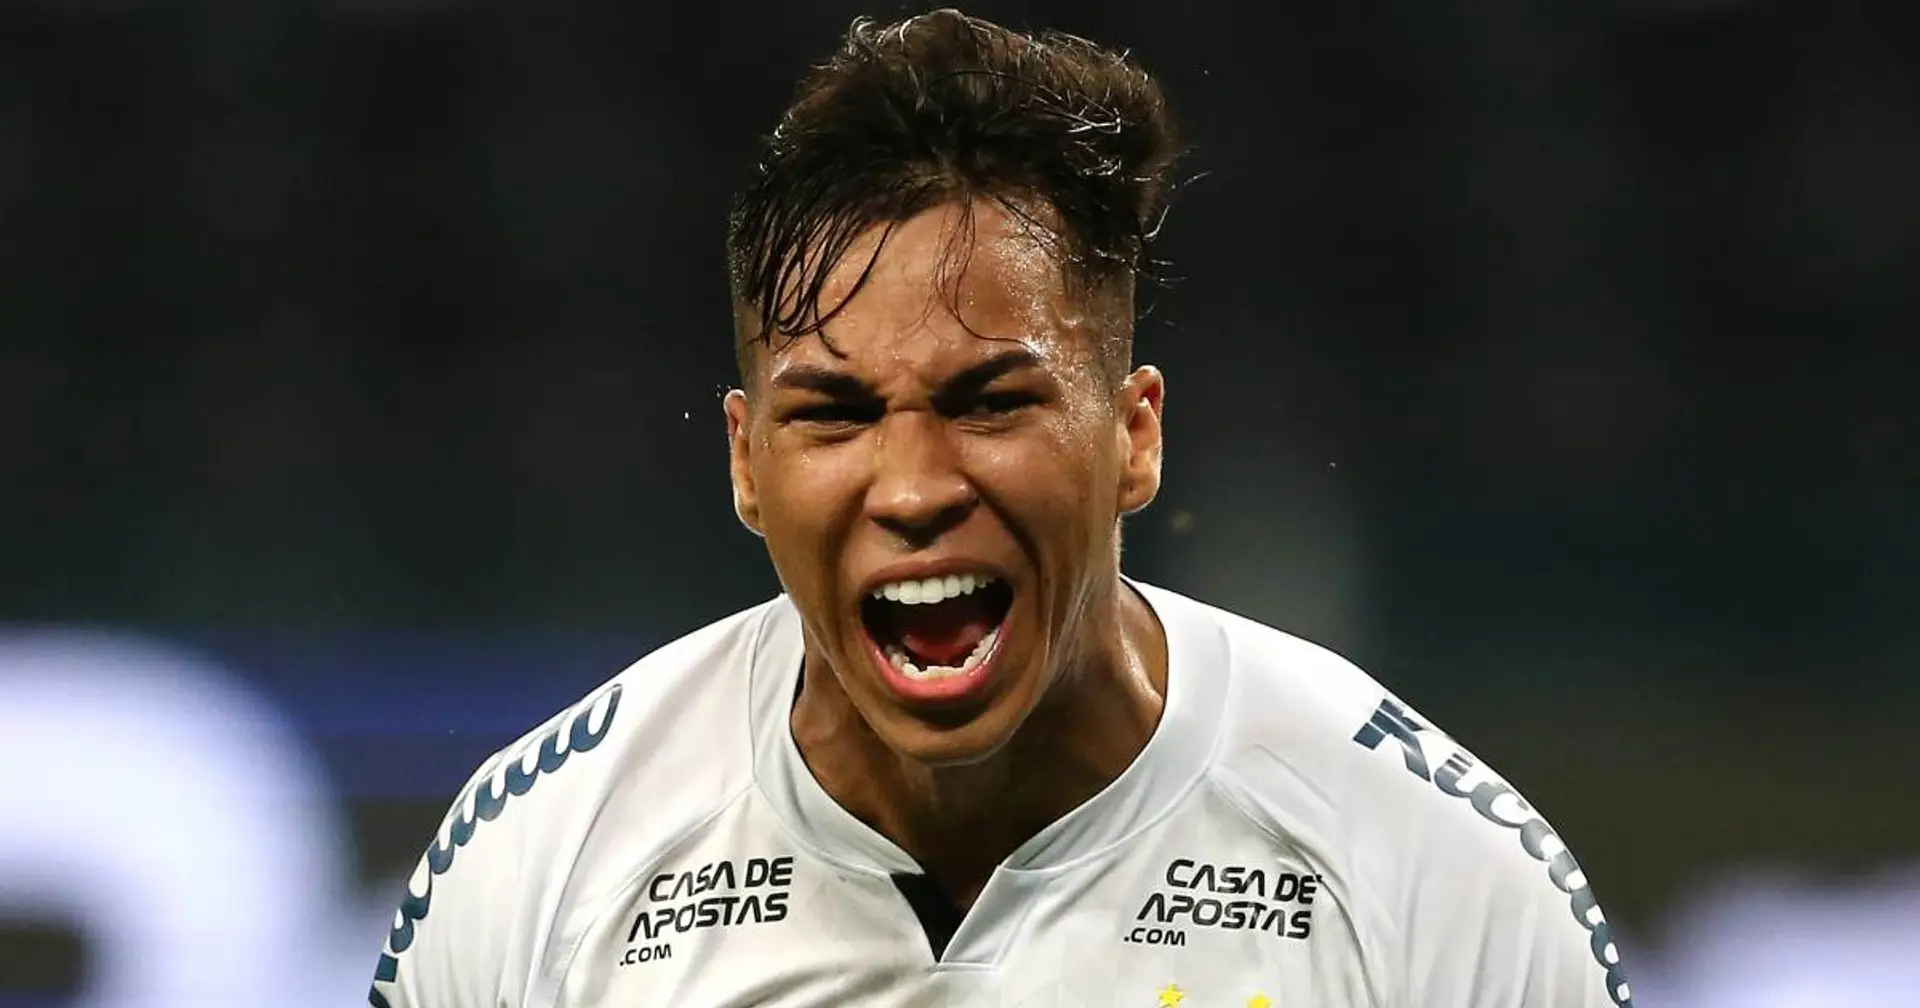 L'analisi del giocatore: chi è Kaio Jorge e quanto può far bene alla Juventus